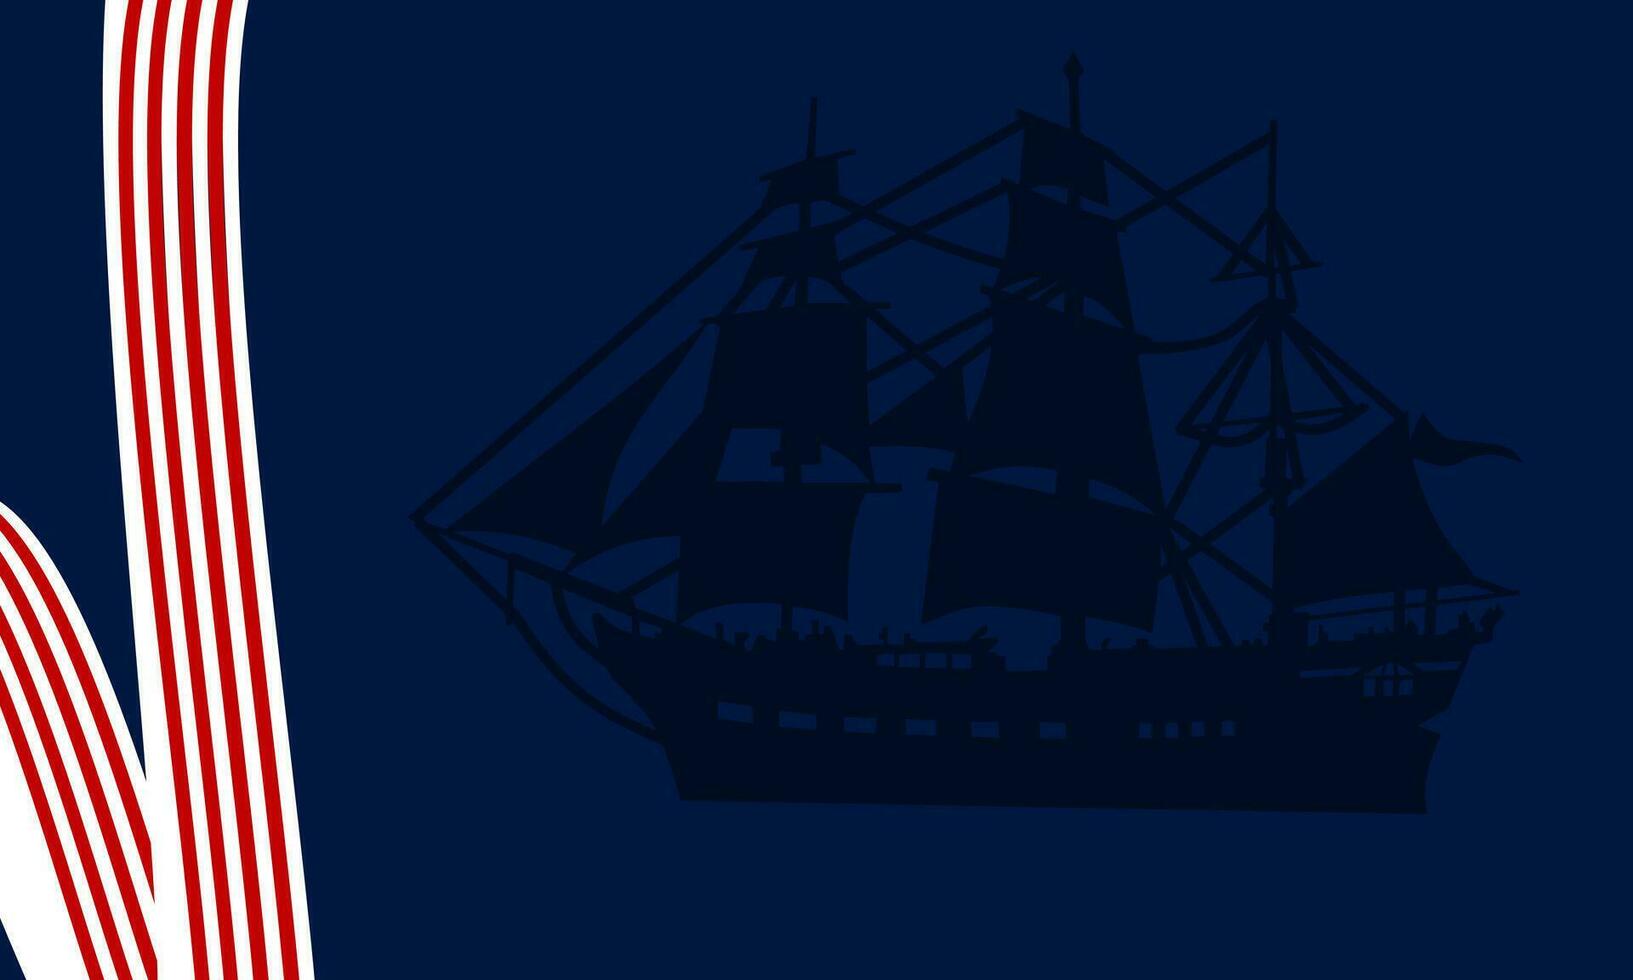 columbus giorno Stati Uniti d'America sfondo. silhouette di nave e strisce. vettore illustrazione